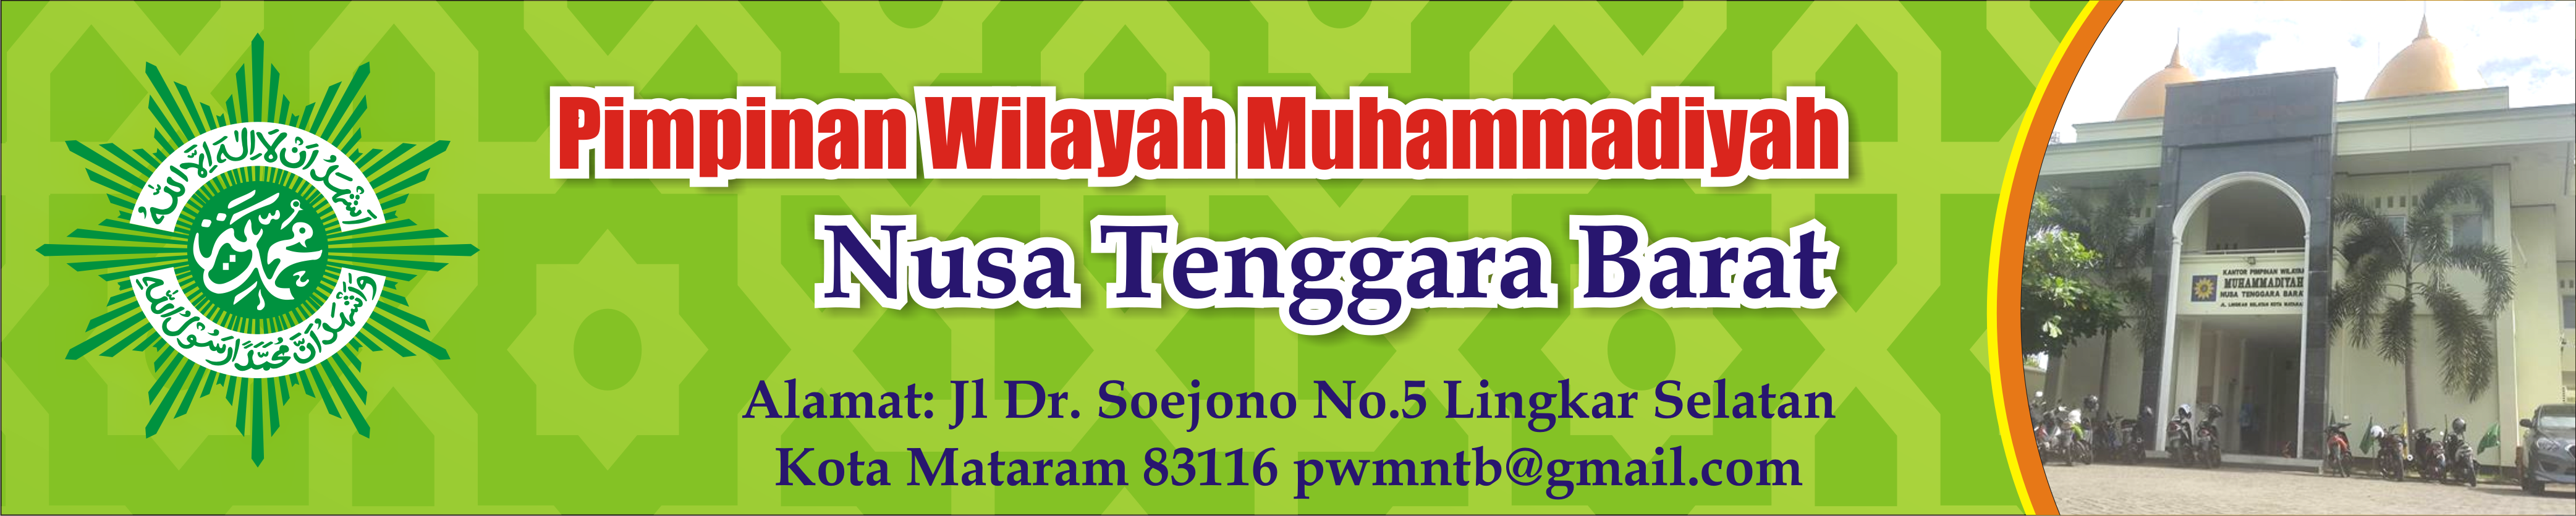 Majelis Pembina Kesehatan Umum Pimpinan Wilayah Muhammadiyah Nusa Tenggara Barat